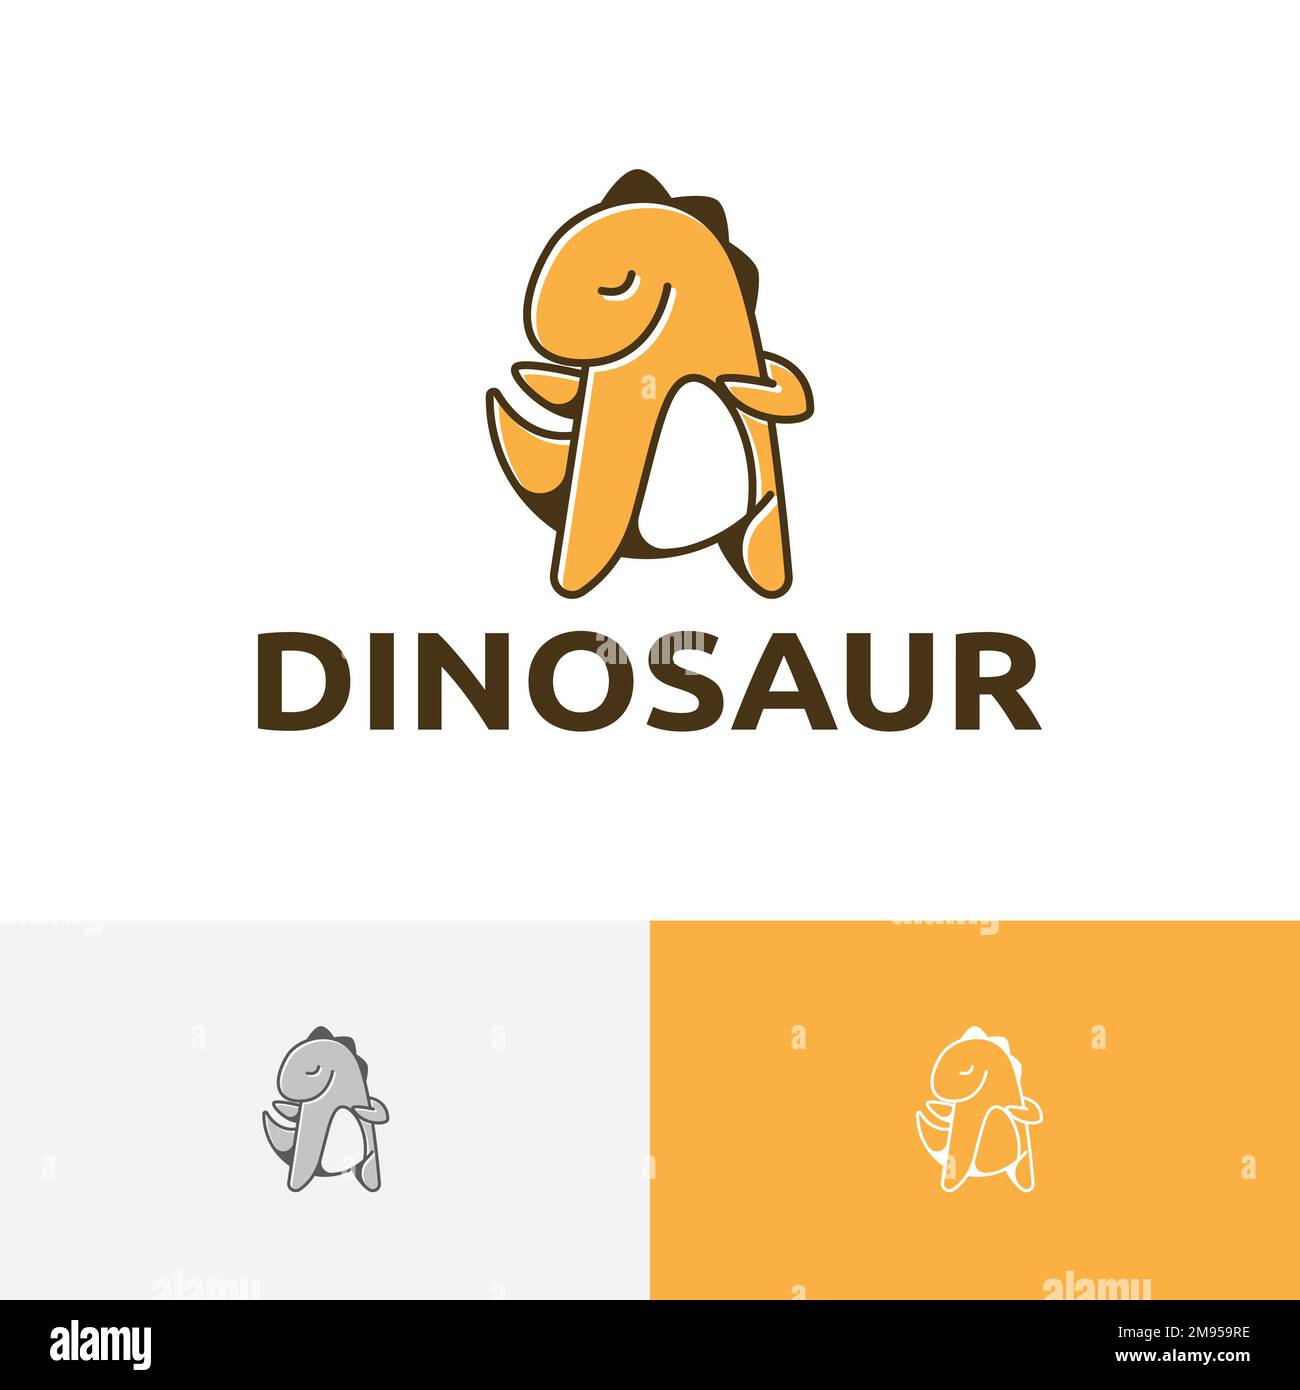 Carino Dinosaur Happy Cool Dino Mascot personaggio logo Illustrazione Vettoriale